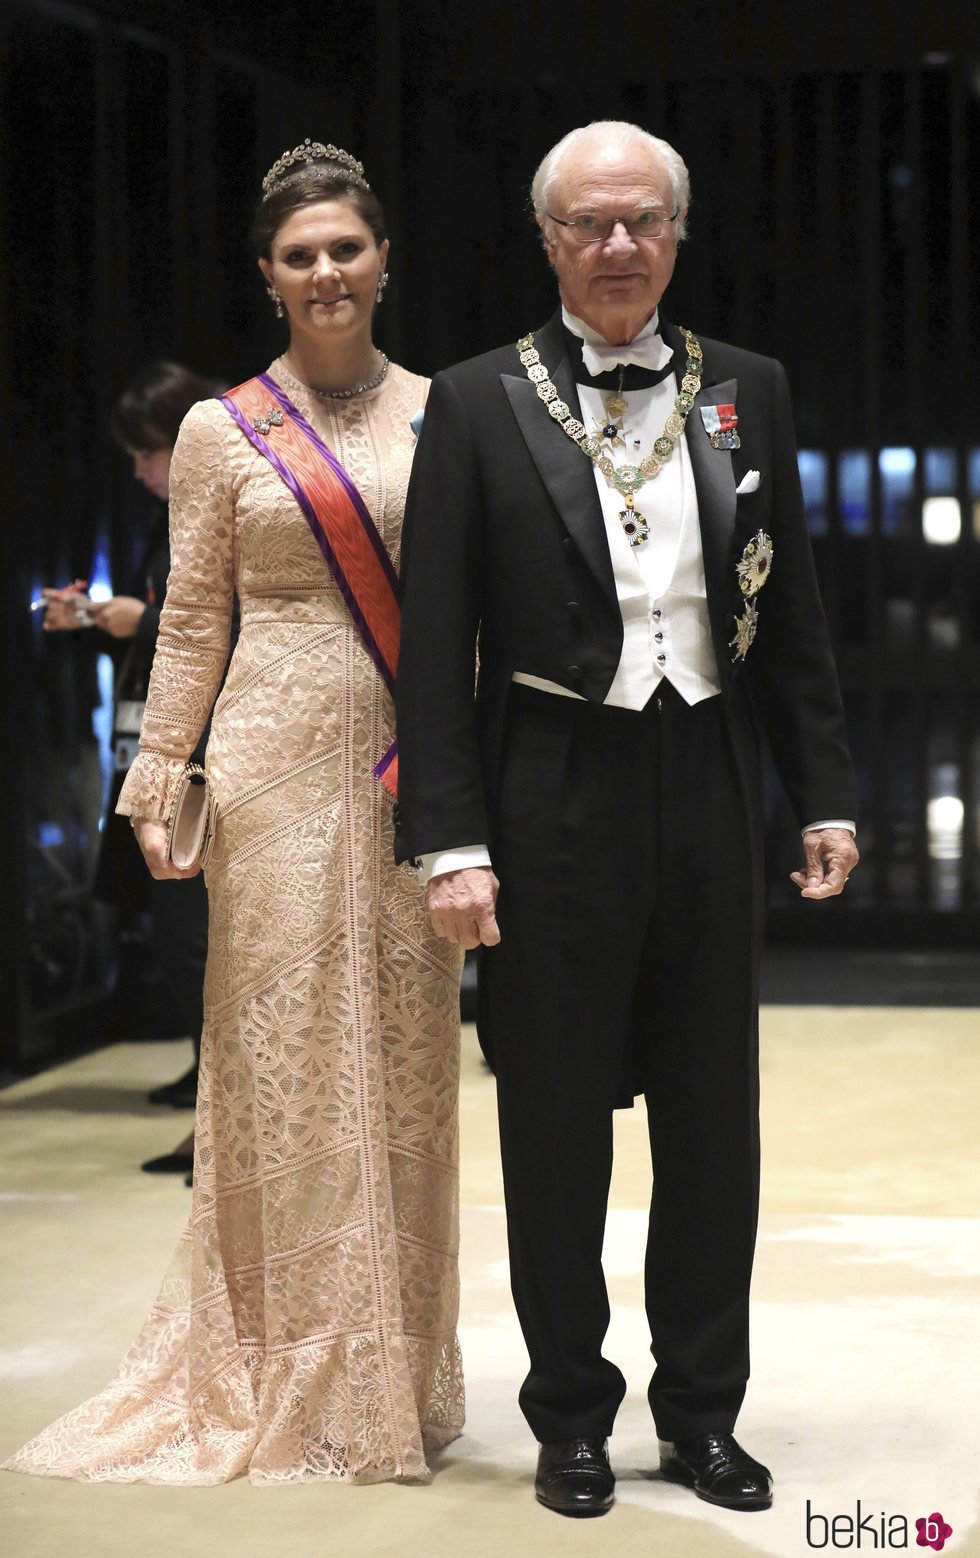 Carlos Gustavo de Suecia y Victoria de Suecia en la cena por la entronización de Naruhito de Japón